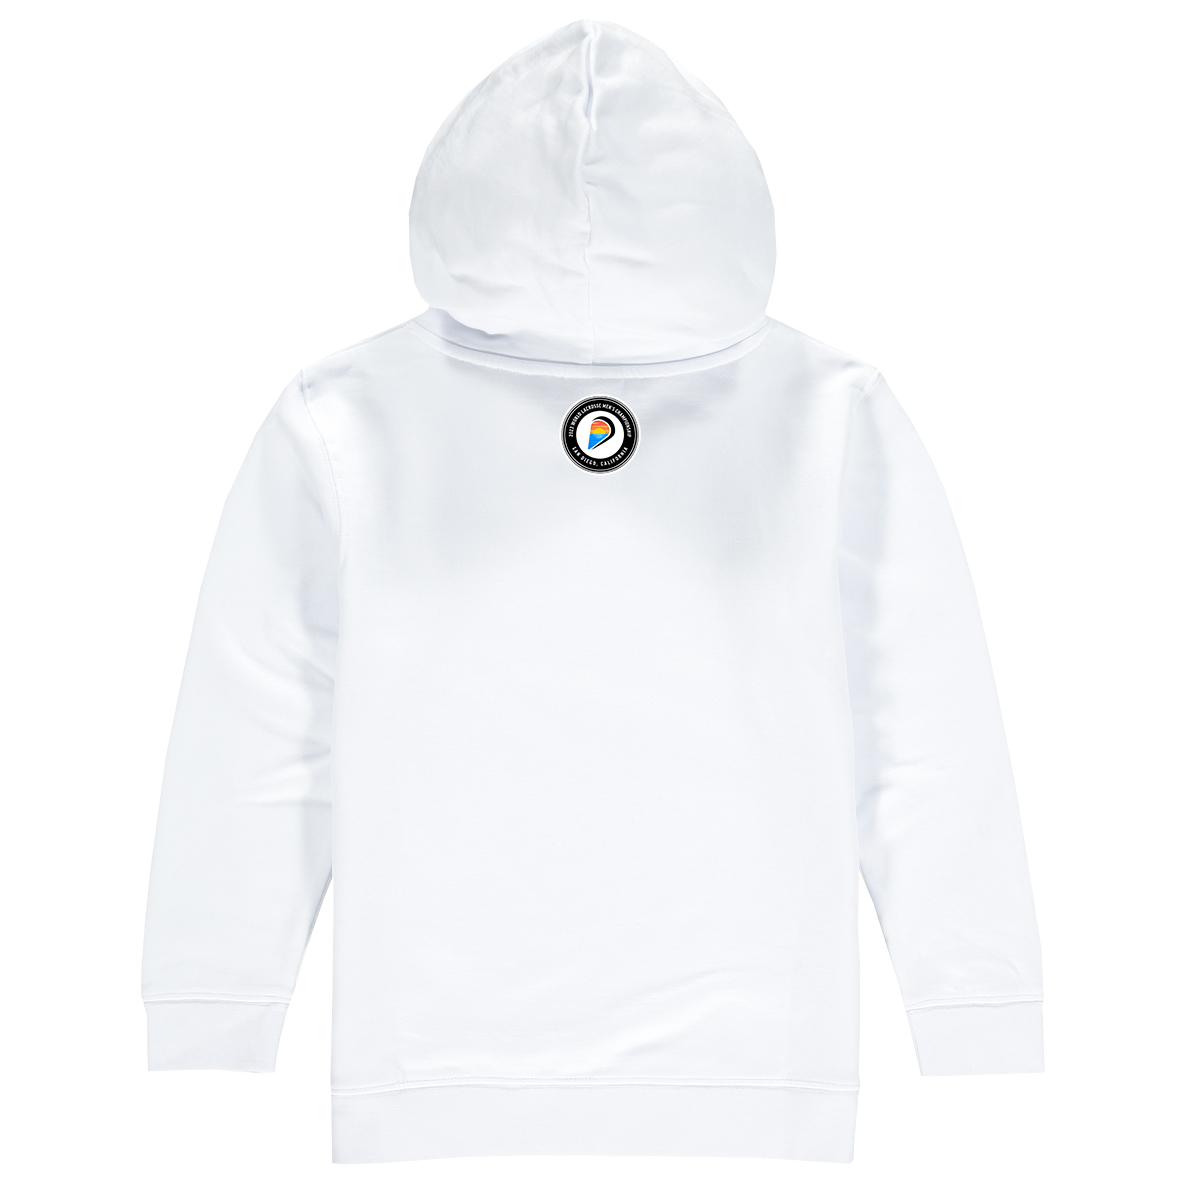 Switzerland Premium Unisex Hoodie Sweatshirt White